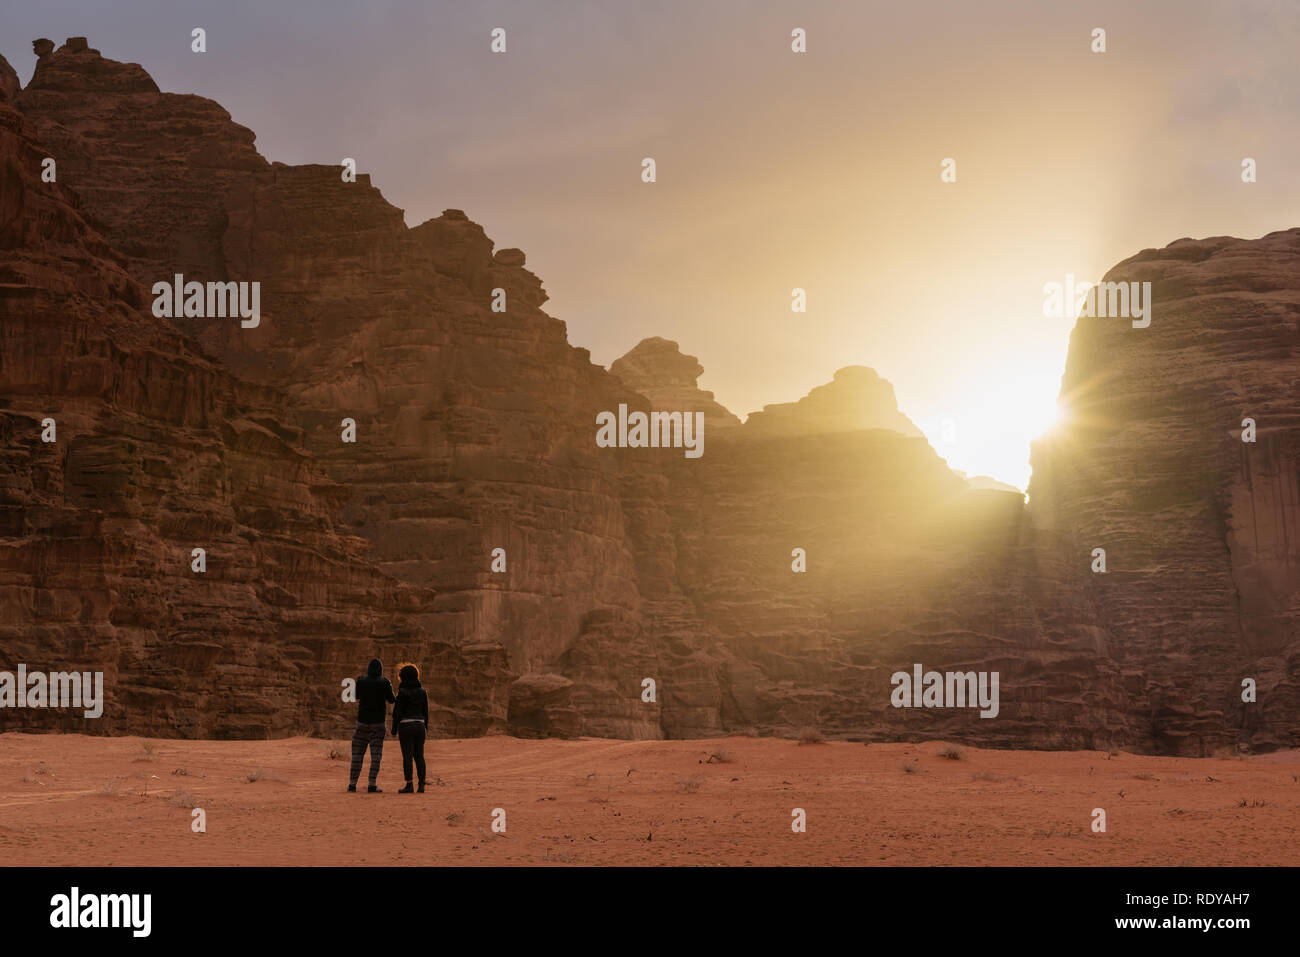 Paar in Wadi Rum Wüste Reisen in Jordanien, geniessen Sie einen wunderschönen Sonnenaufgang am Morgen Stockfoto